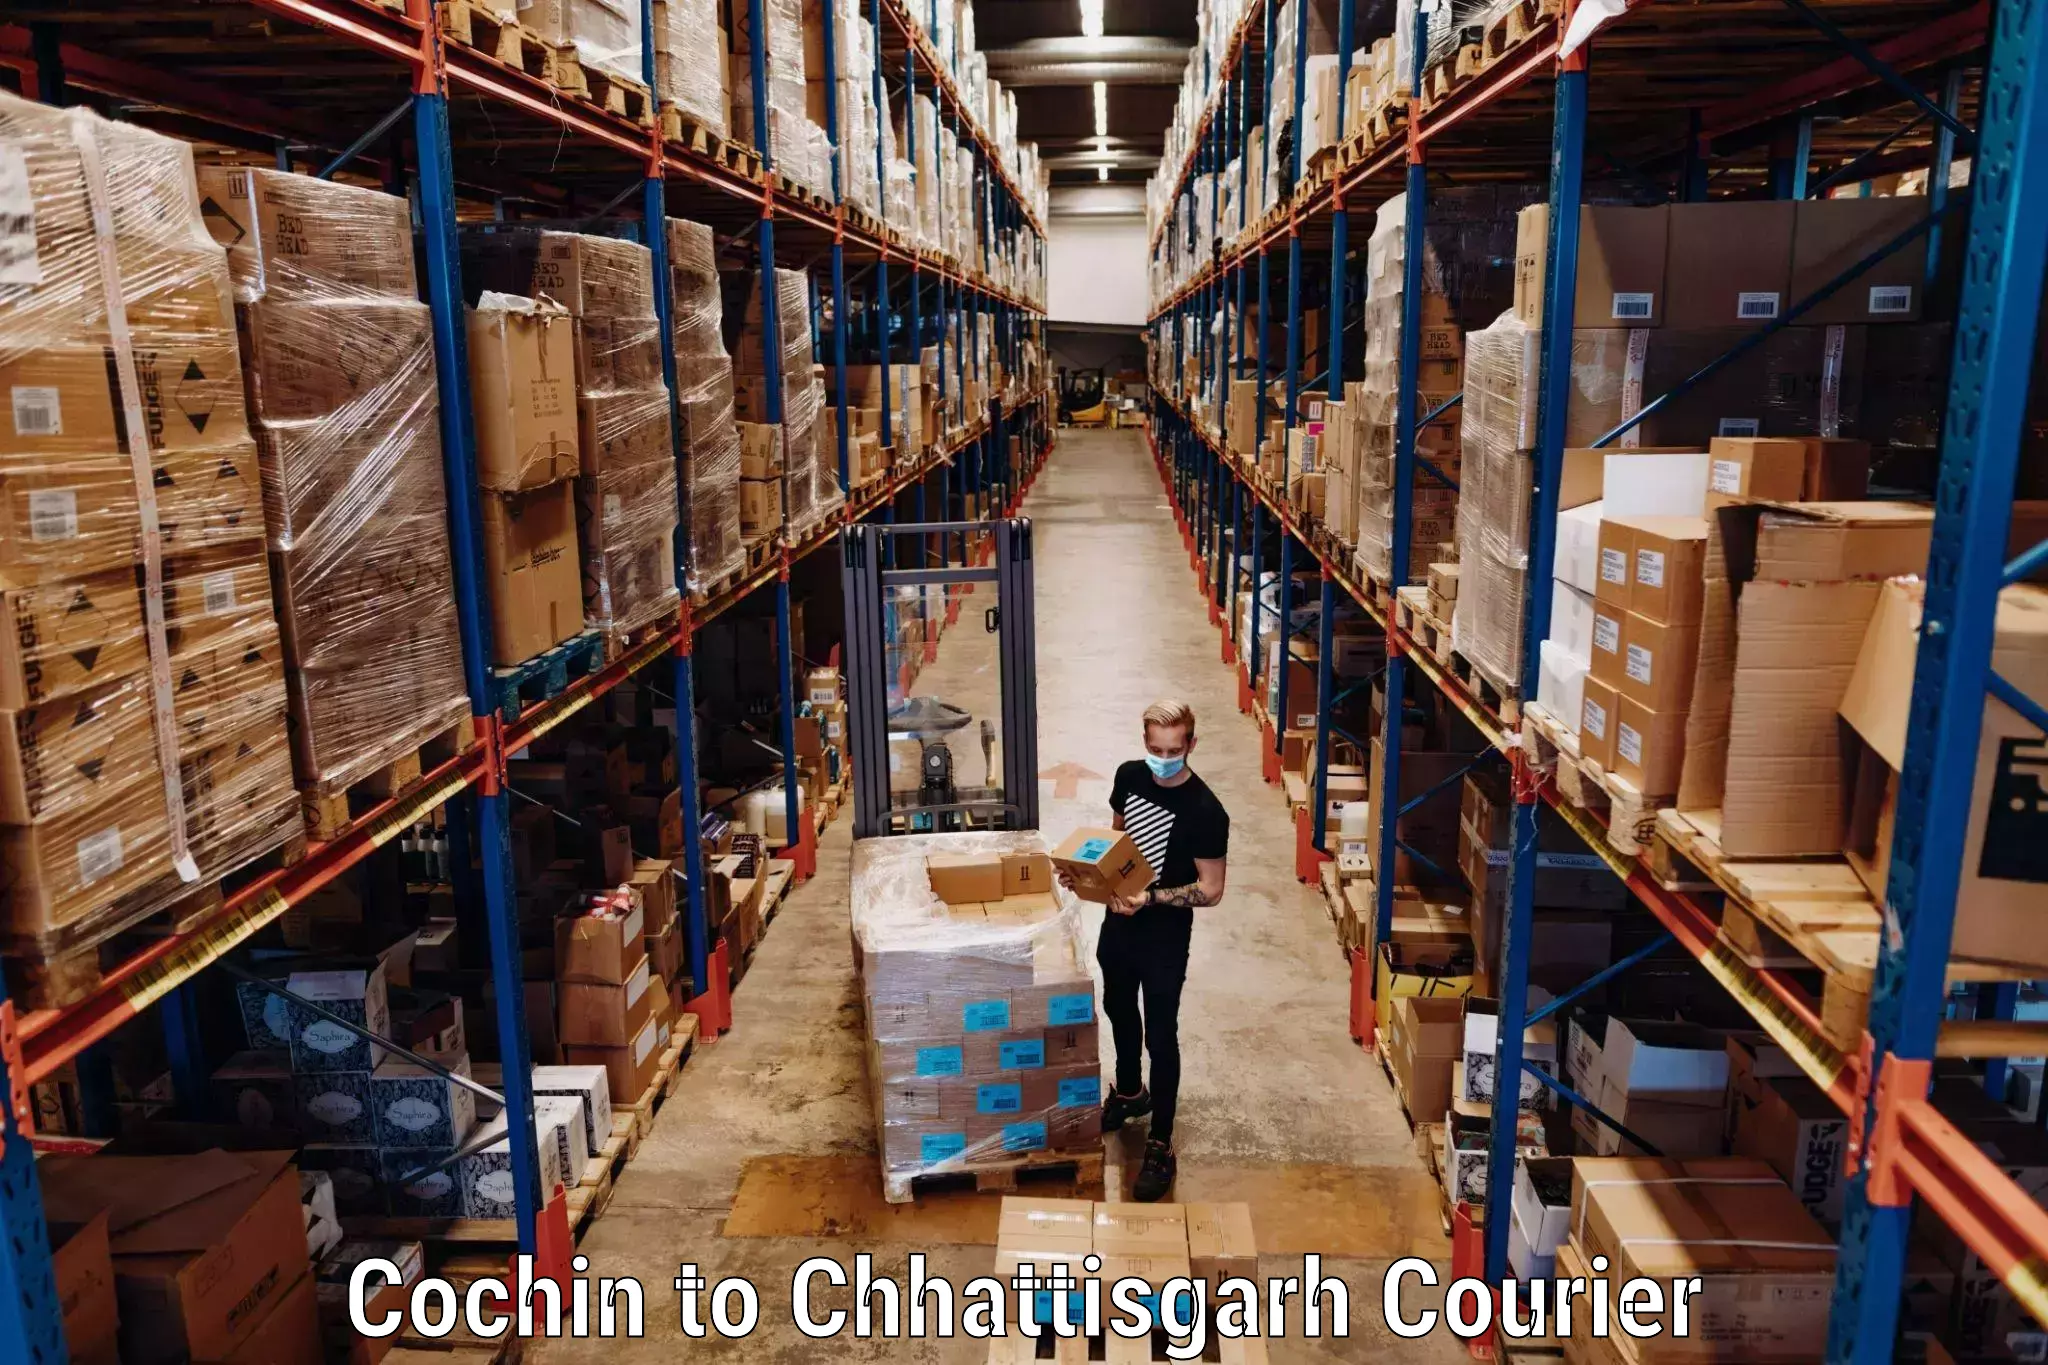 Customized luggage delivery in Cochin to Bijapur Chhattisgarh